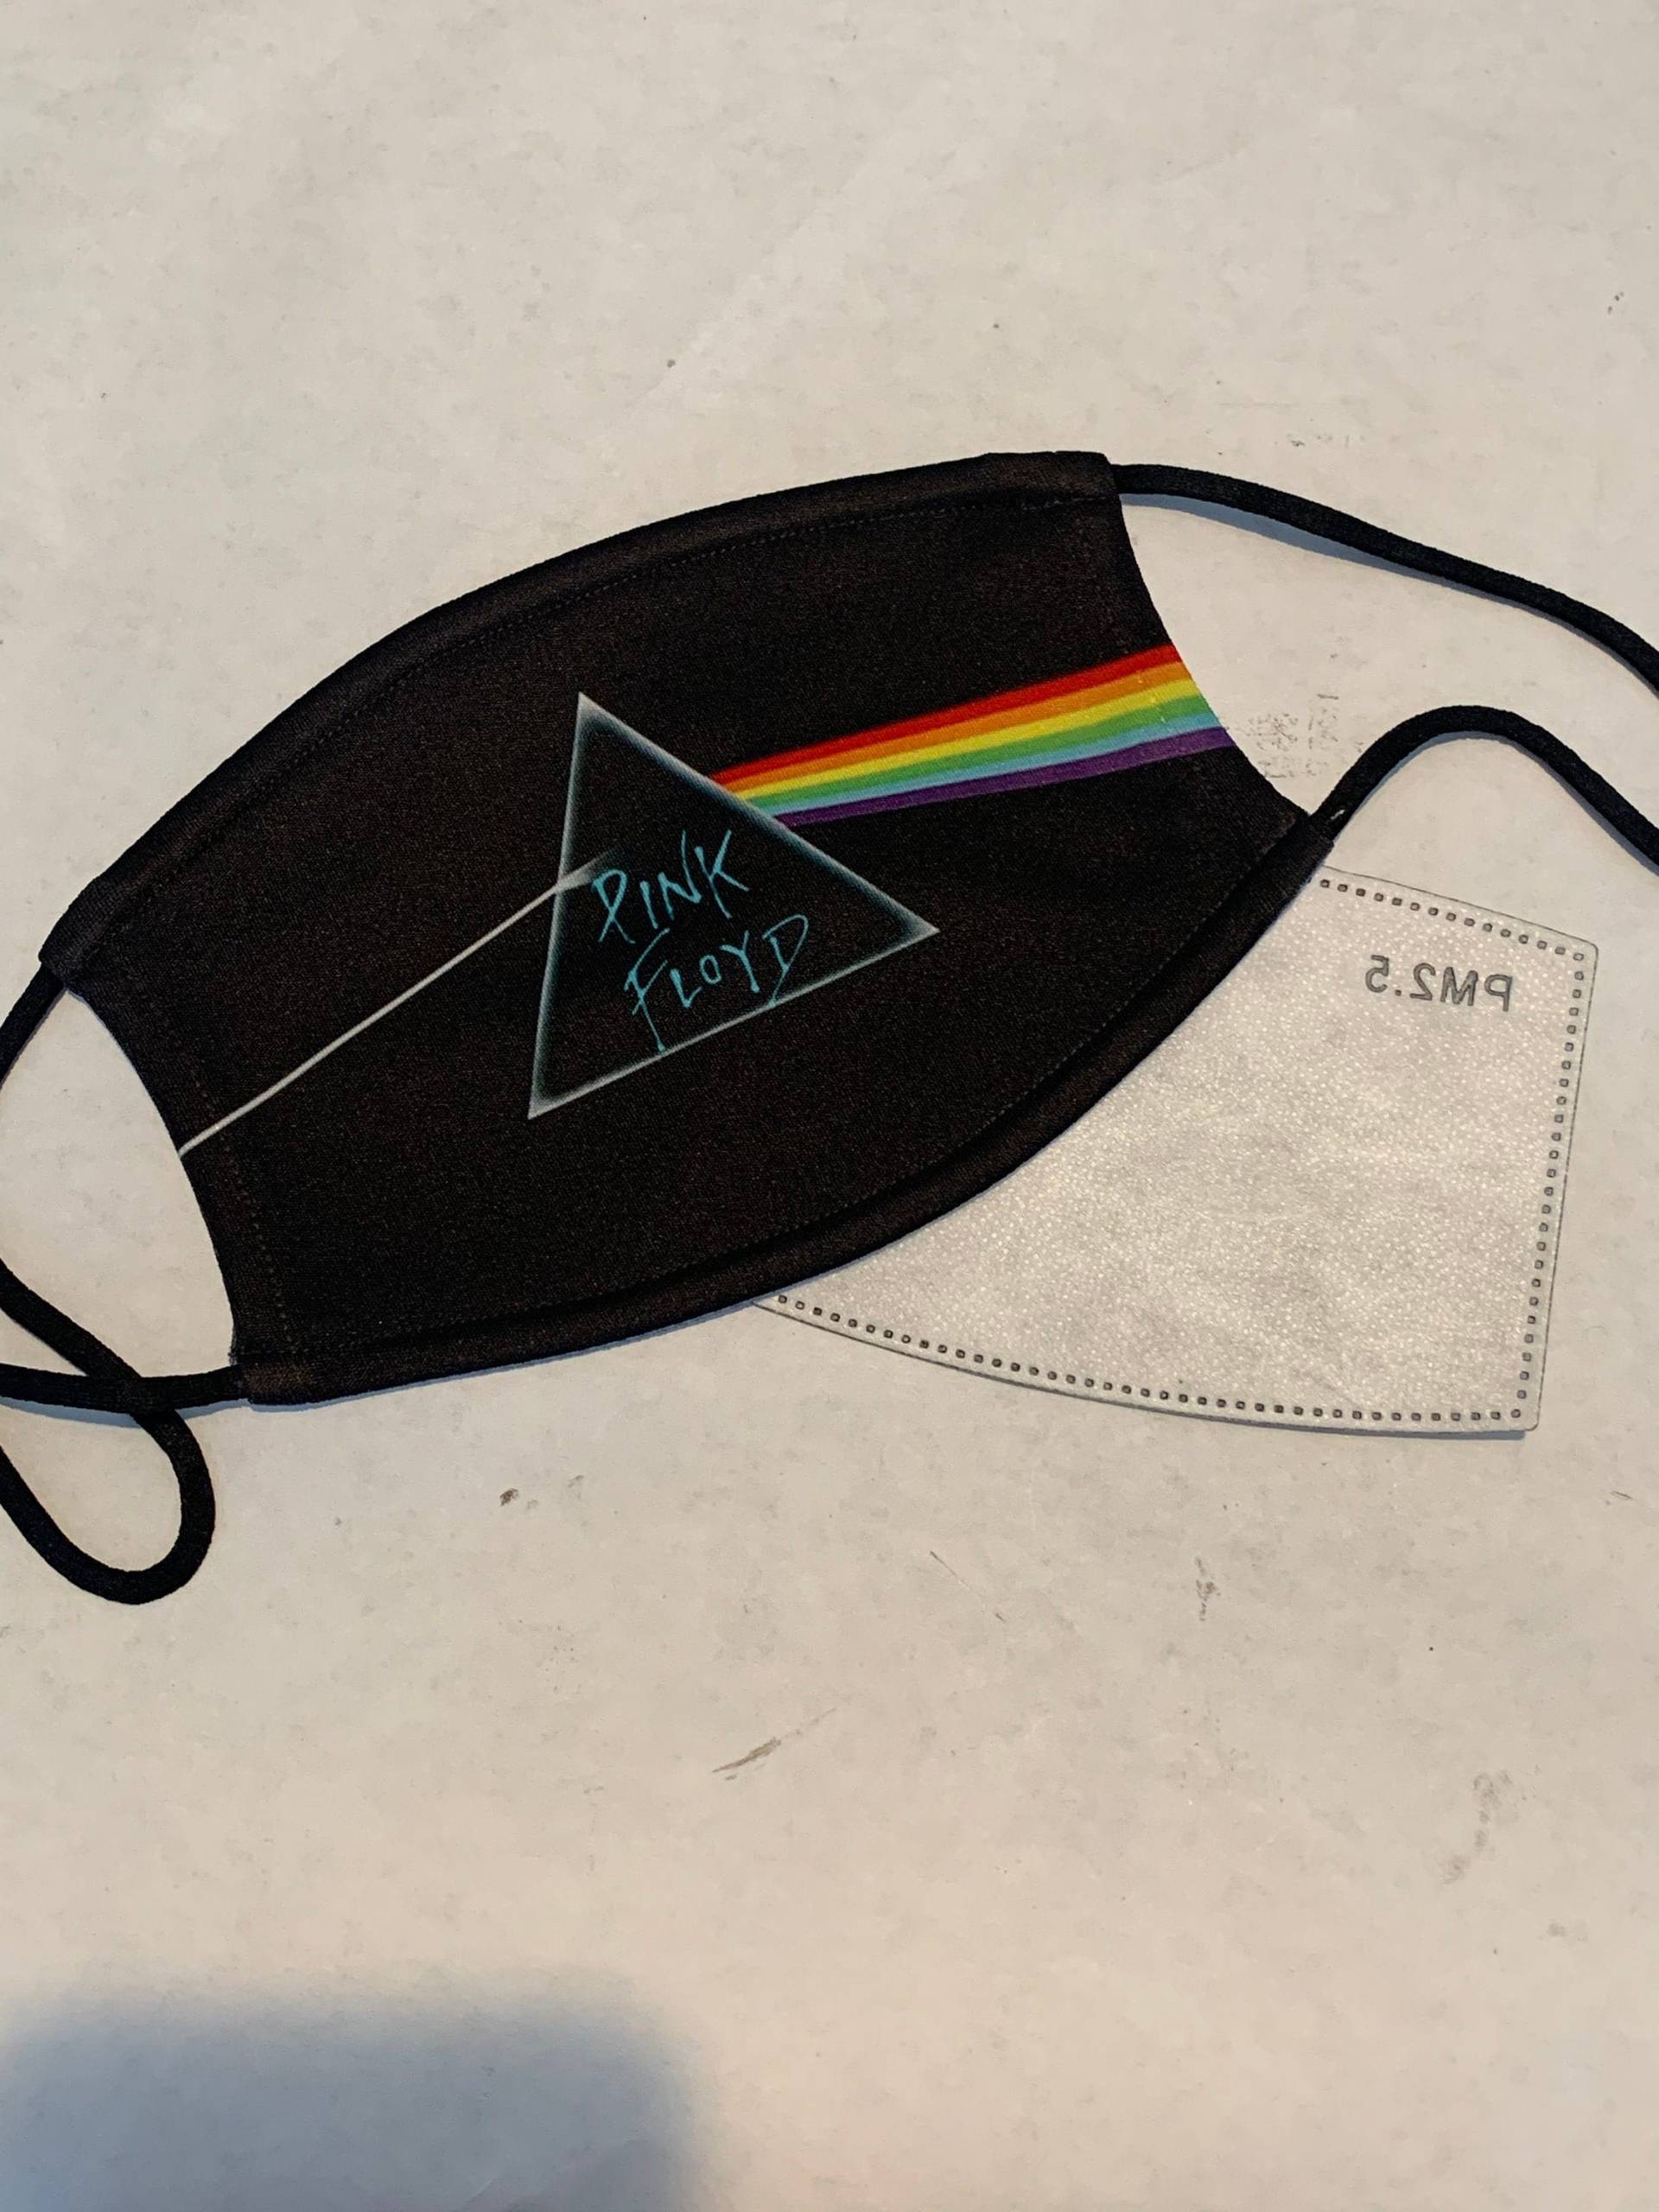 Pink Floyd Music Gesichtsmaske Mit Filter - Neu von theGraphikShop